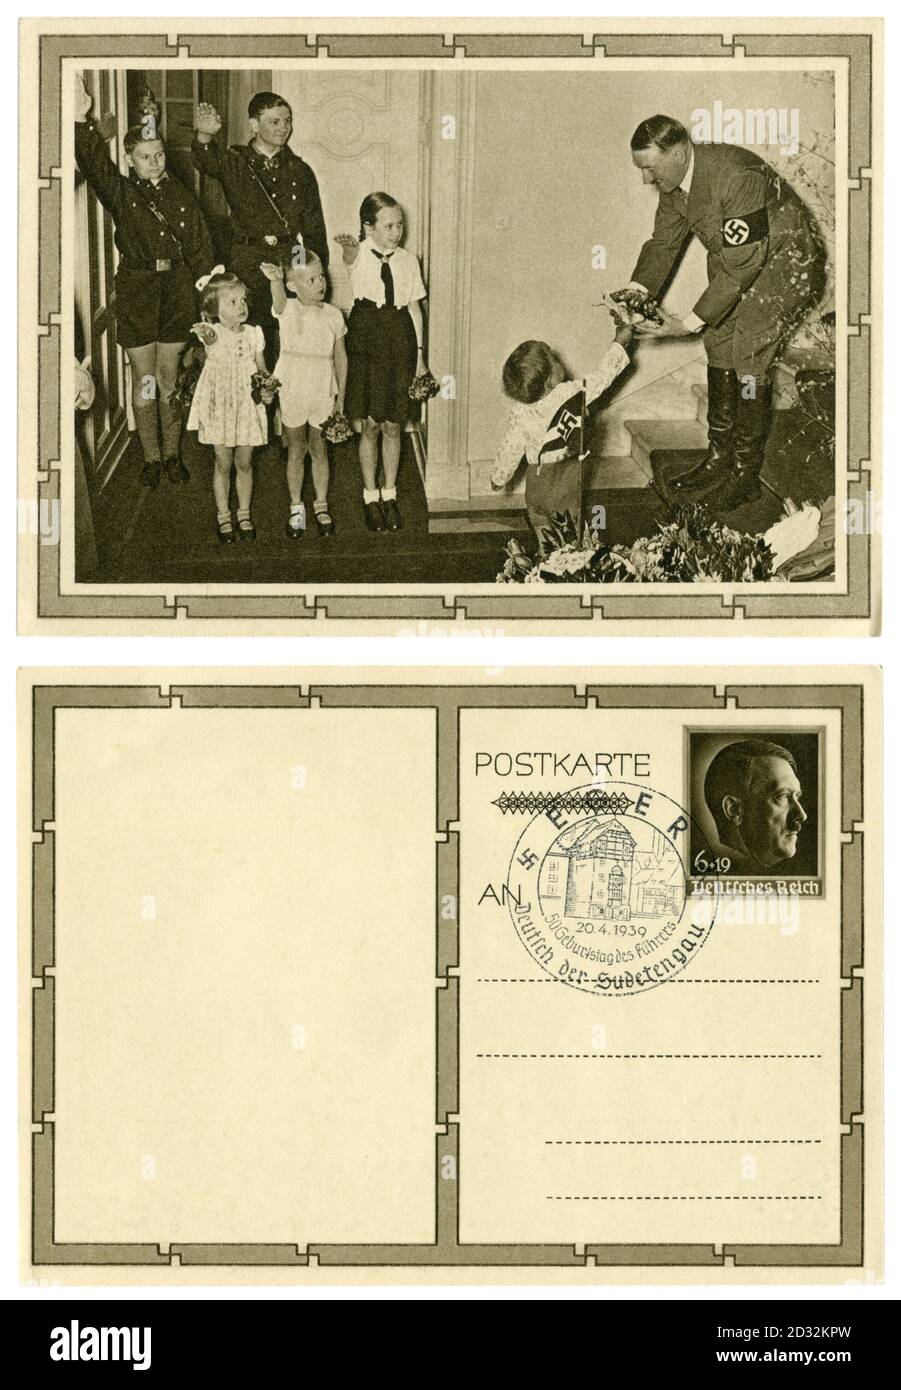 Cartolina storica tedesca: Il 50° compleanno di Adolf Hitler. Riceve un bouquet di fiori dal più giovane dei 6 figli di Goebbels, Germania, 1939 Foto Stock